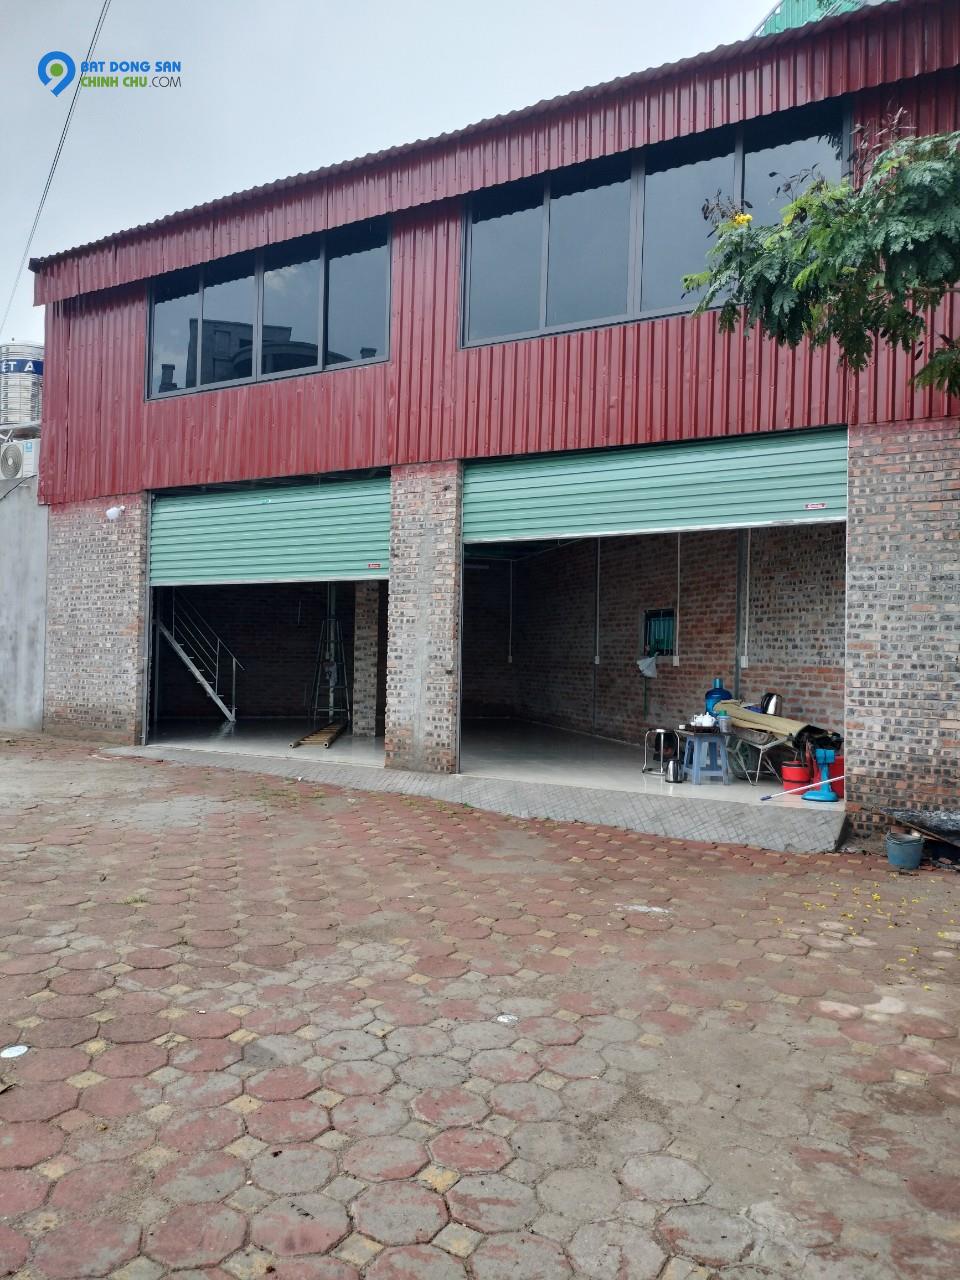 Chính chủ cần cho thuê cửa hàng 2 tầng tại 172 Đường Nguyễn Mậu Tài, Trâu Qùy, Gia Lâm, Hà Nội.